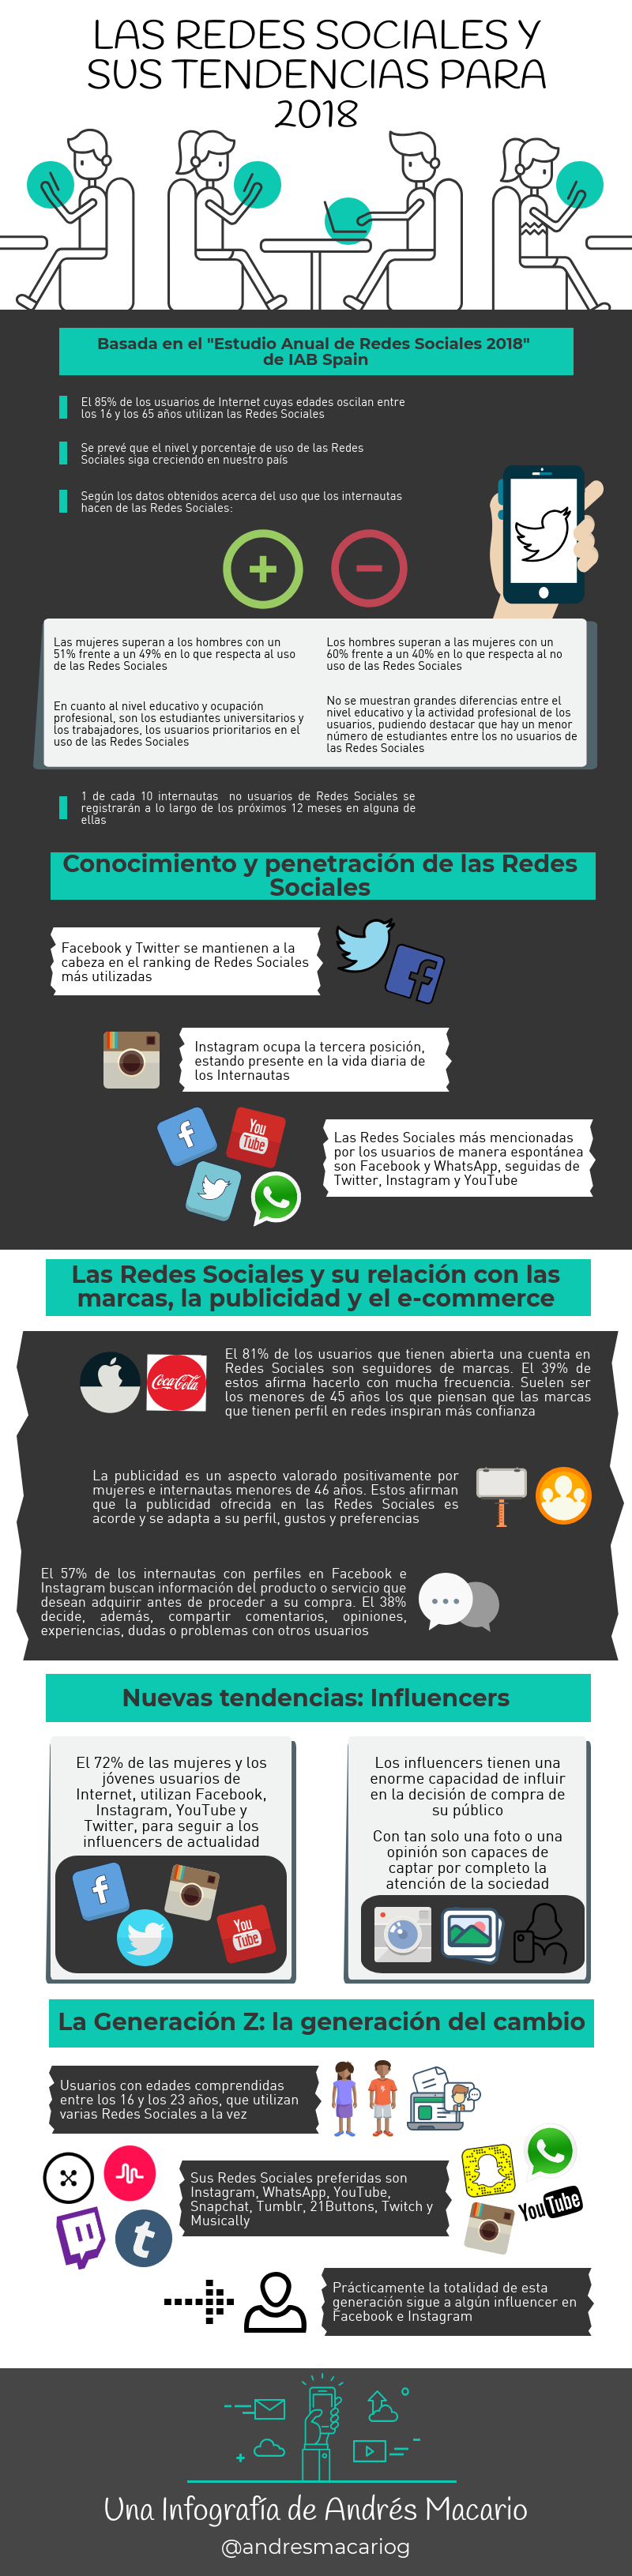 Nuevas tendencias en redes sociales - infografía Andrés Macario